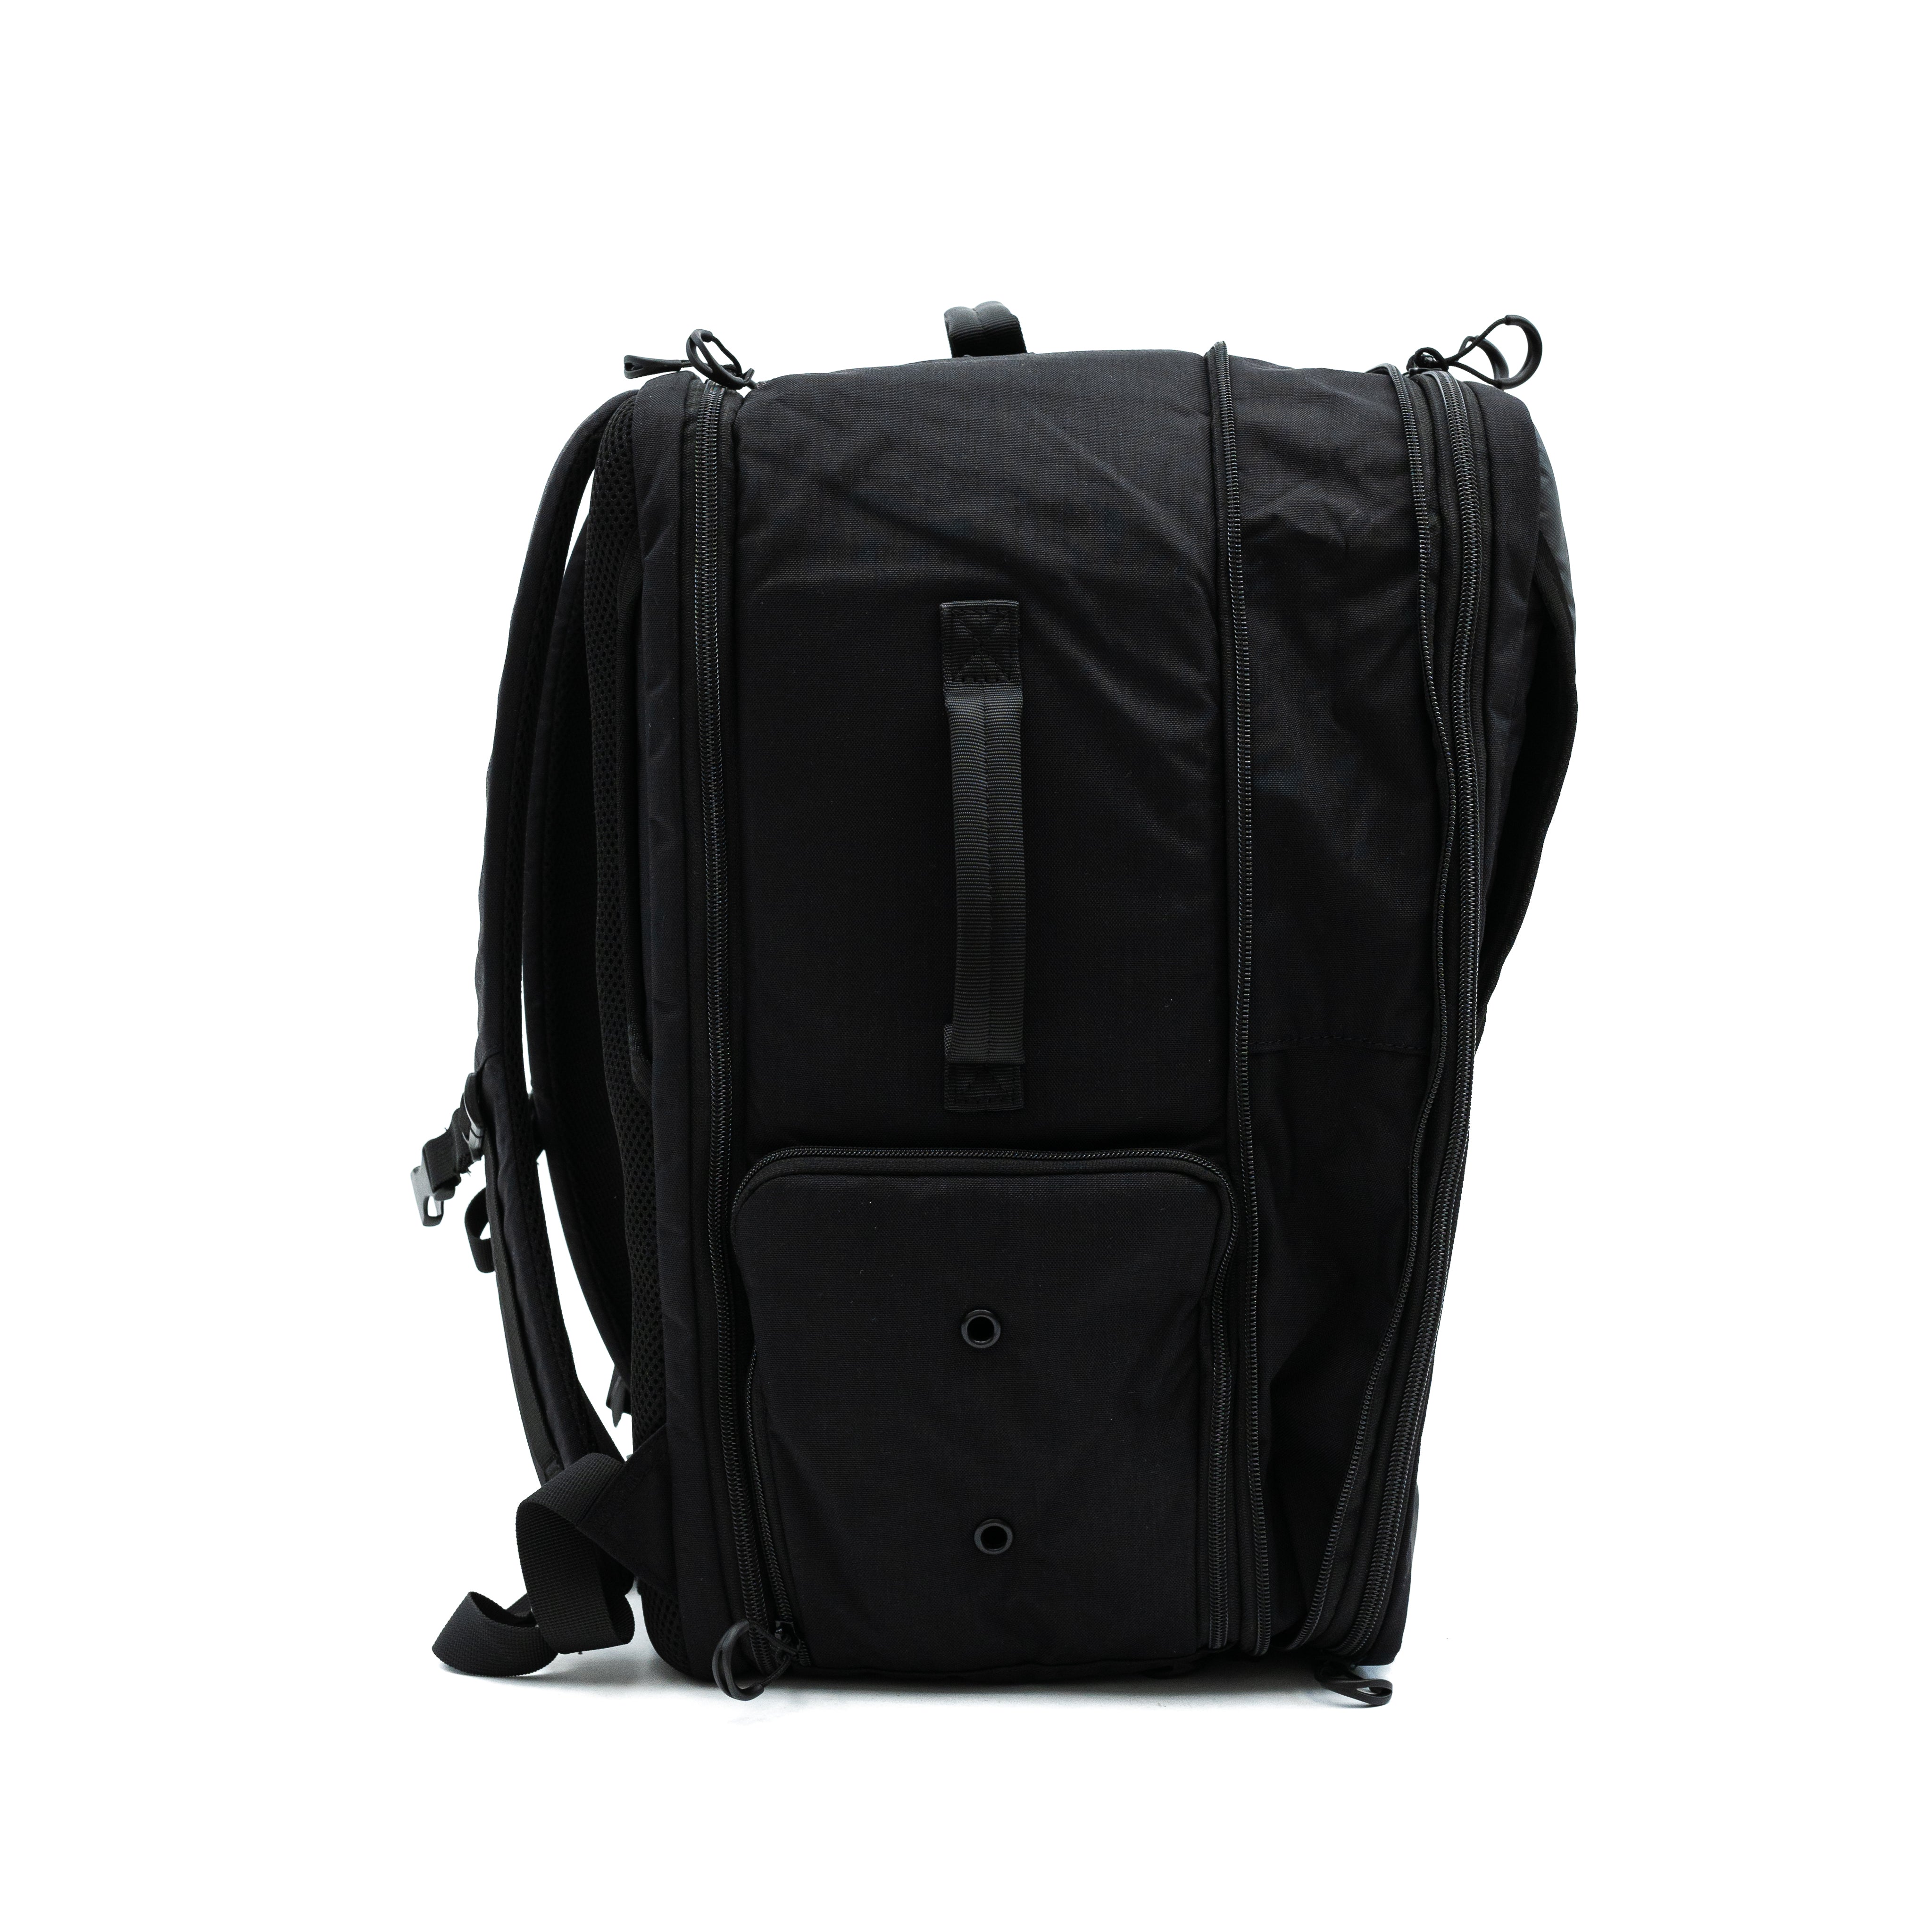 U Bag Powerlifting Backpack | Gym Backpack with Belt Holder – A7